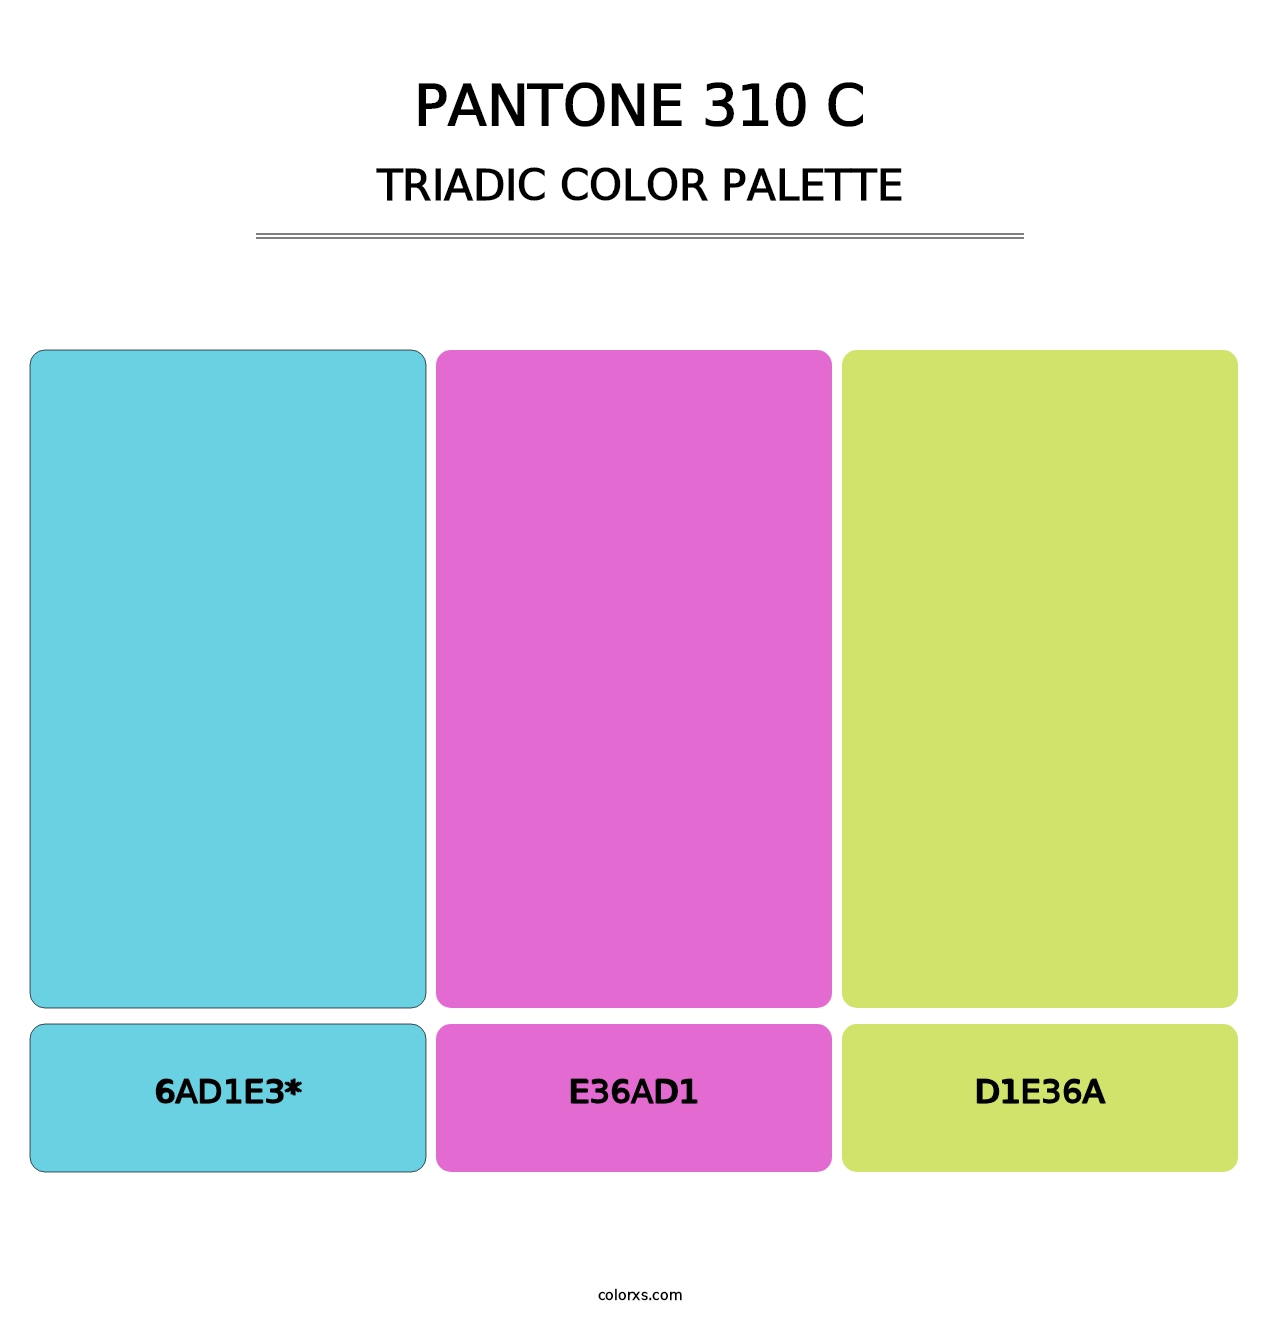 PANTONE 310 C - Triadic Color Palette